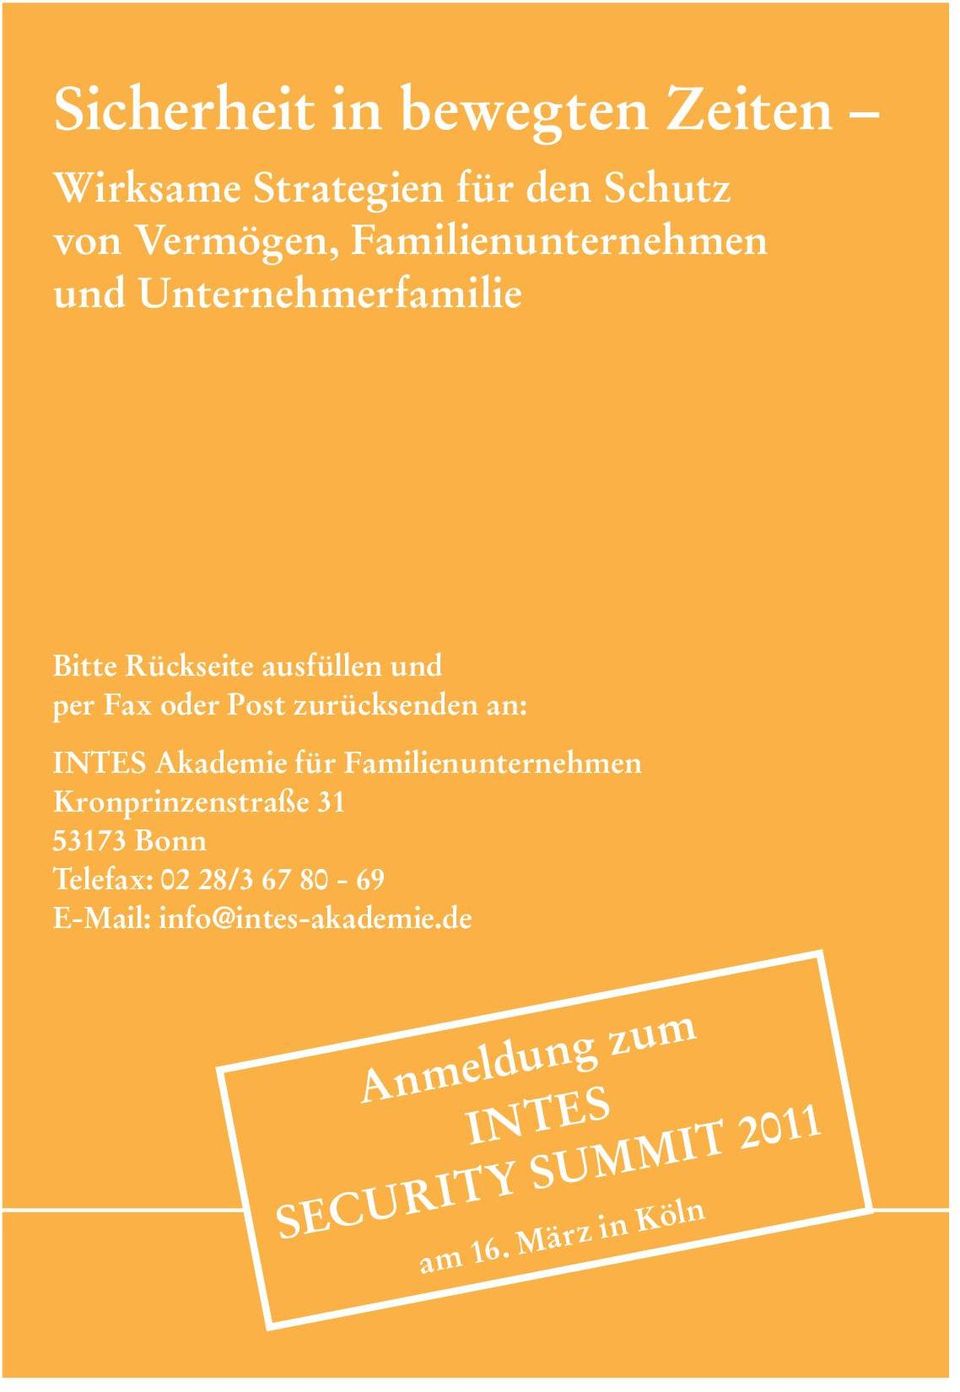 zurücksenden an: INTES Akademie für Familienunternehmen Kronprinzenstraße 31 53173 Bonn